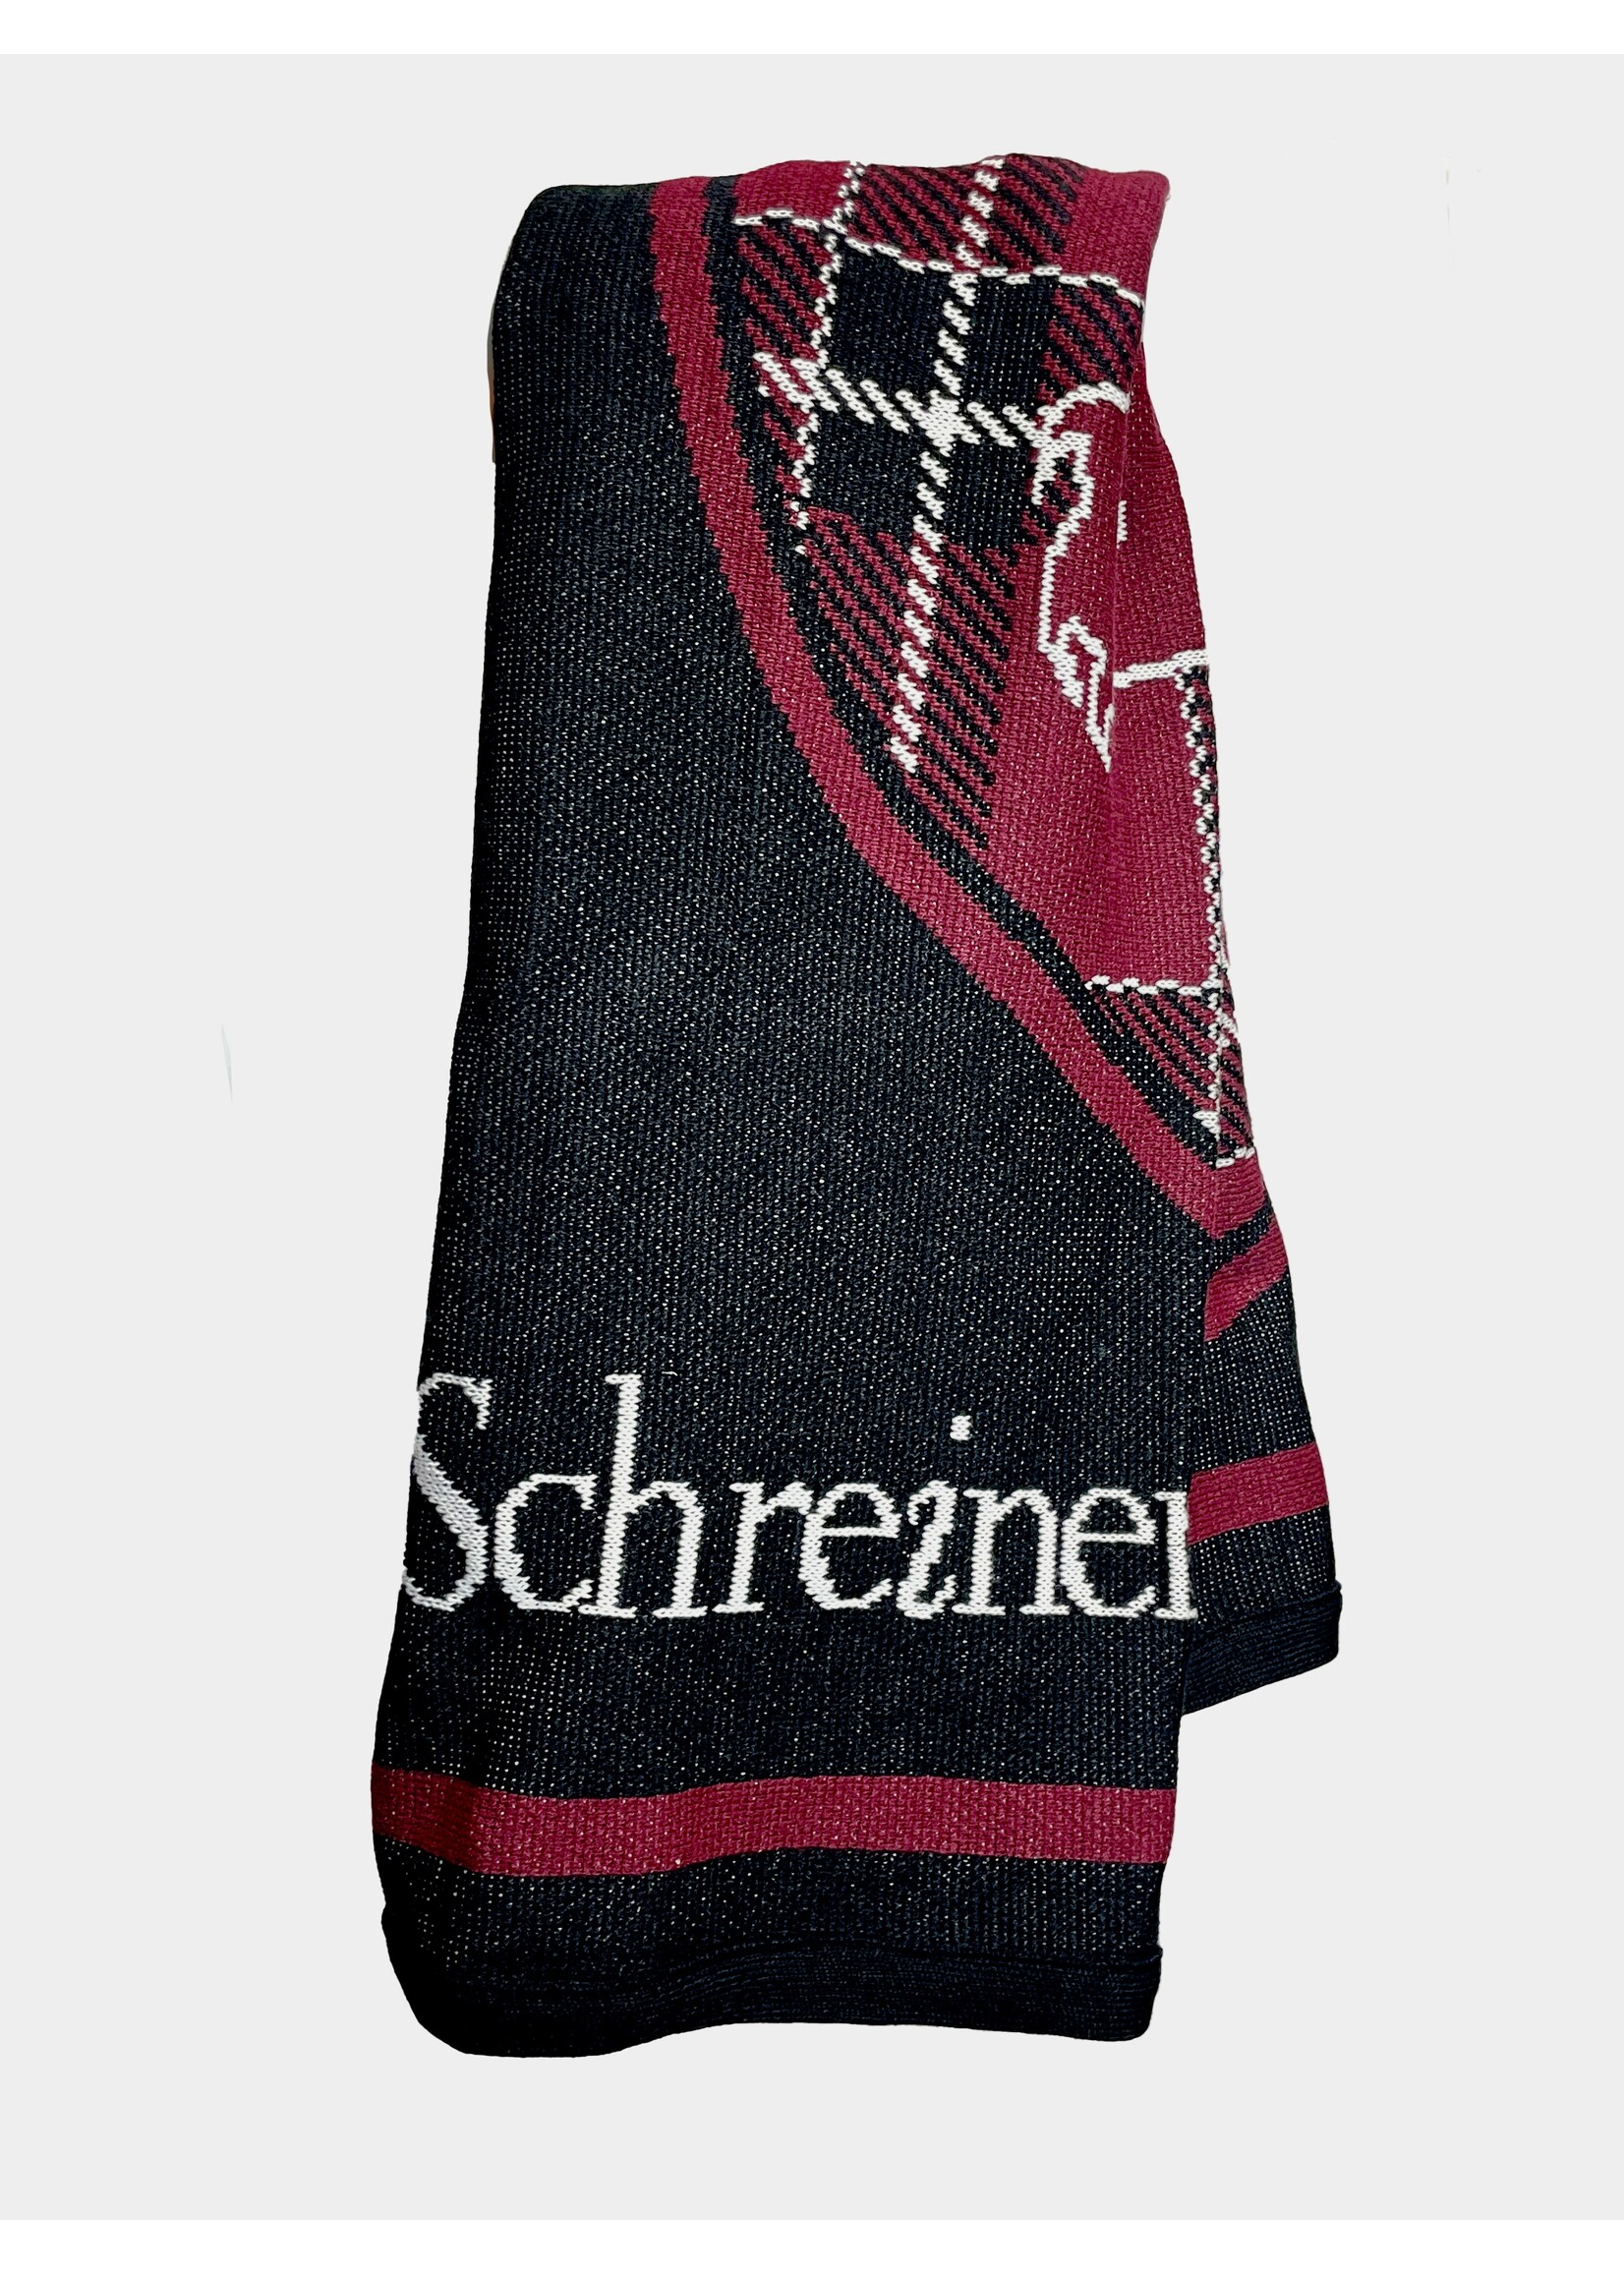 Schreiner Tartan Blanket 63”x53”